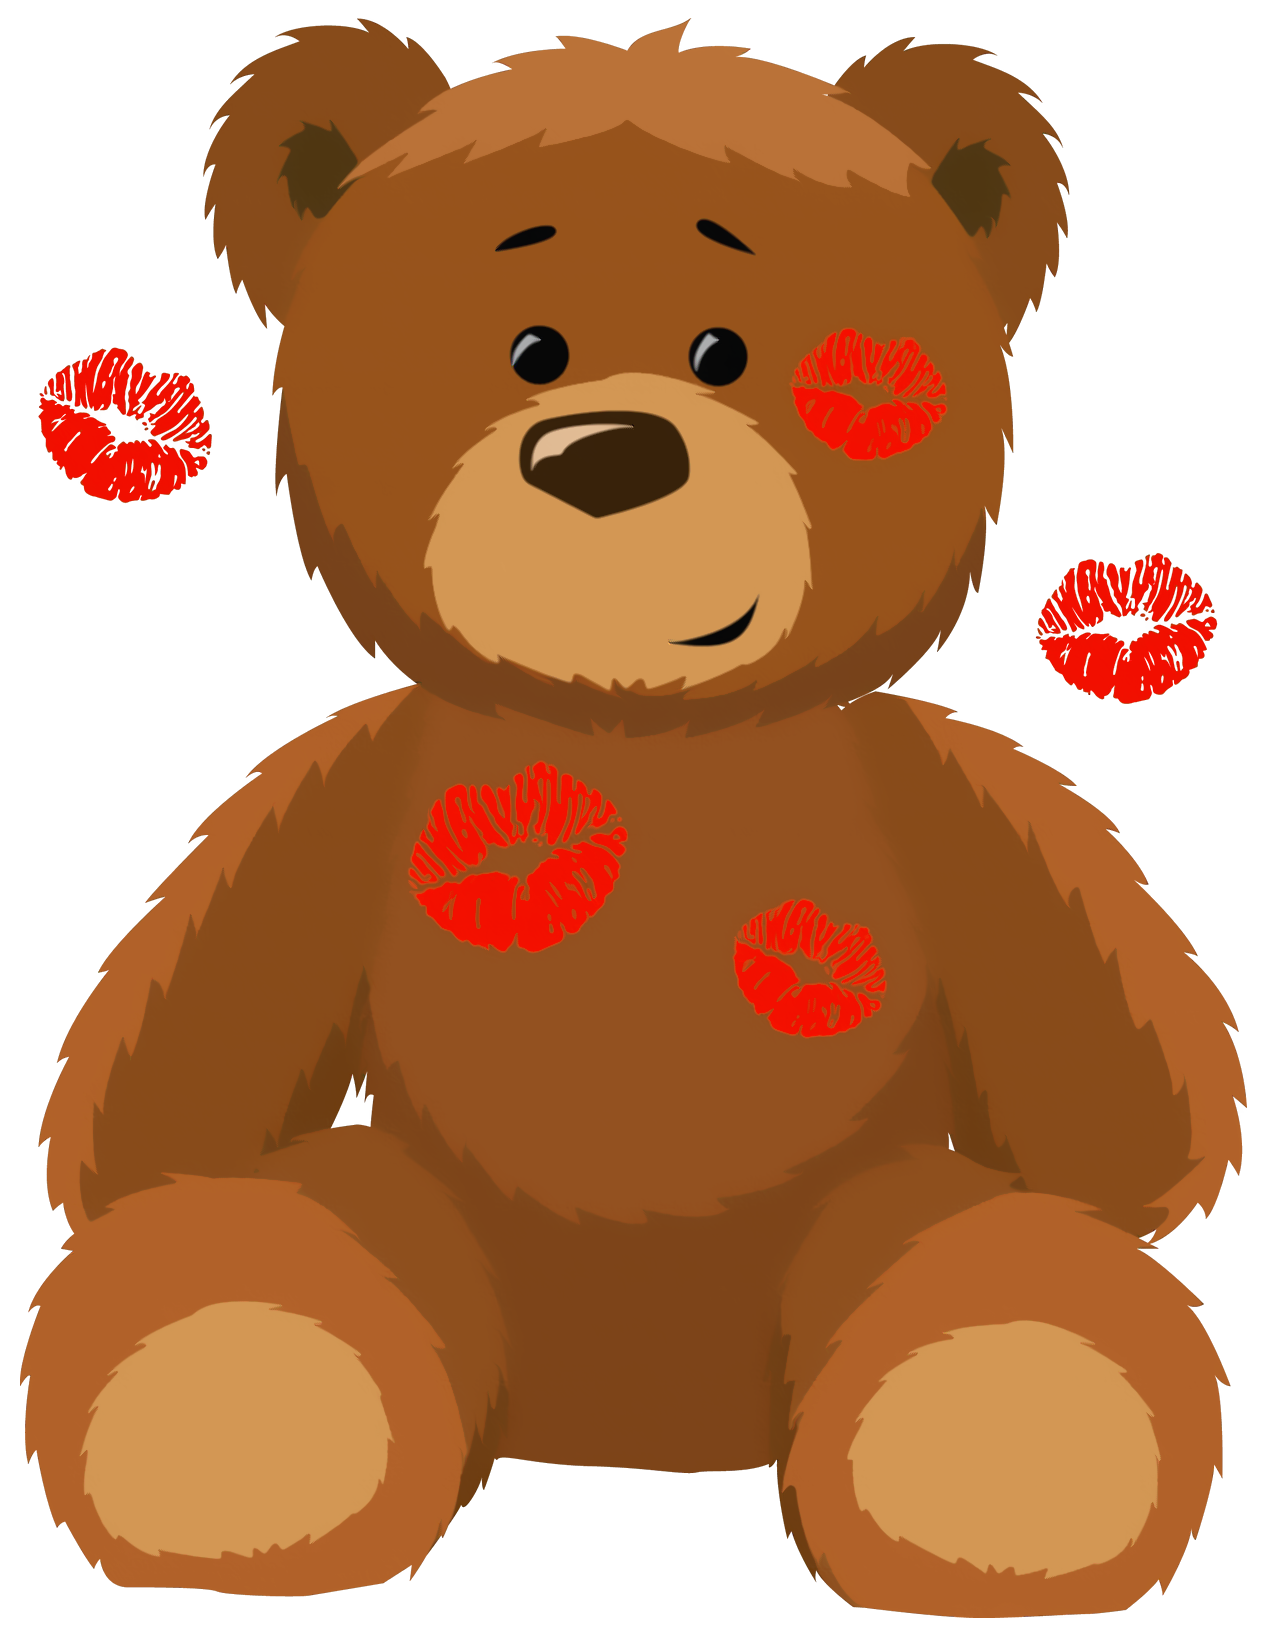 An Adorable Teddy Bear Awaits a Loving Home